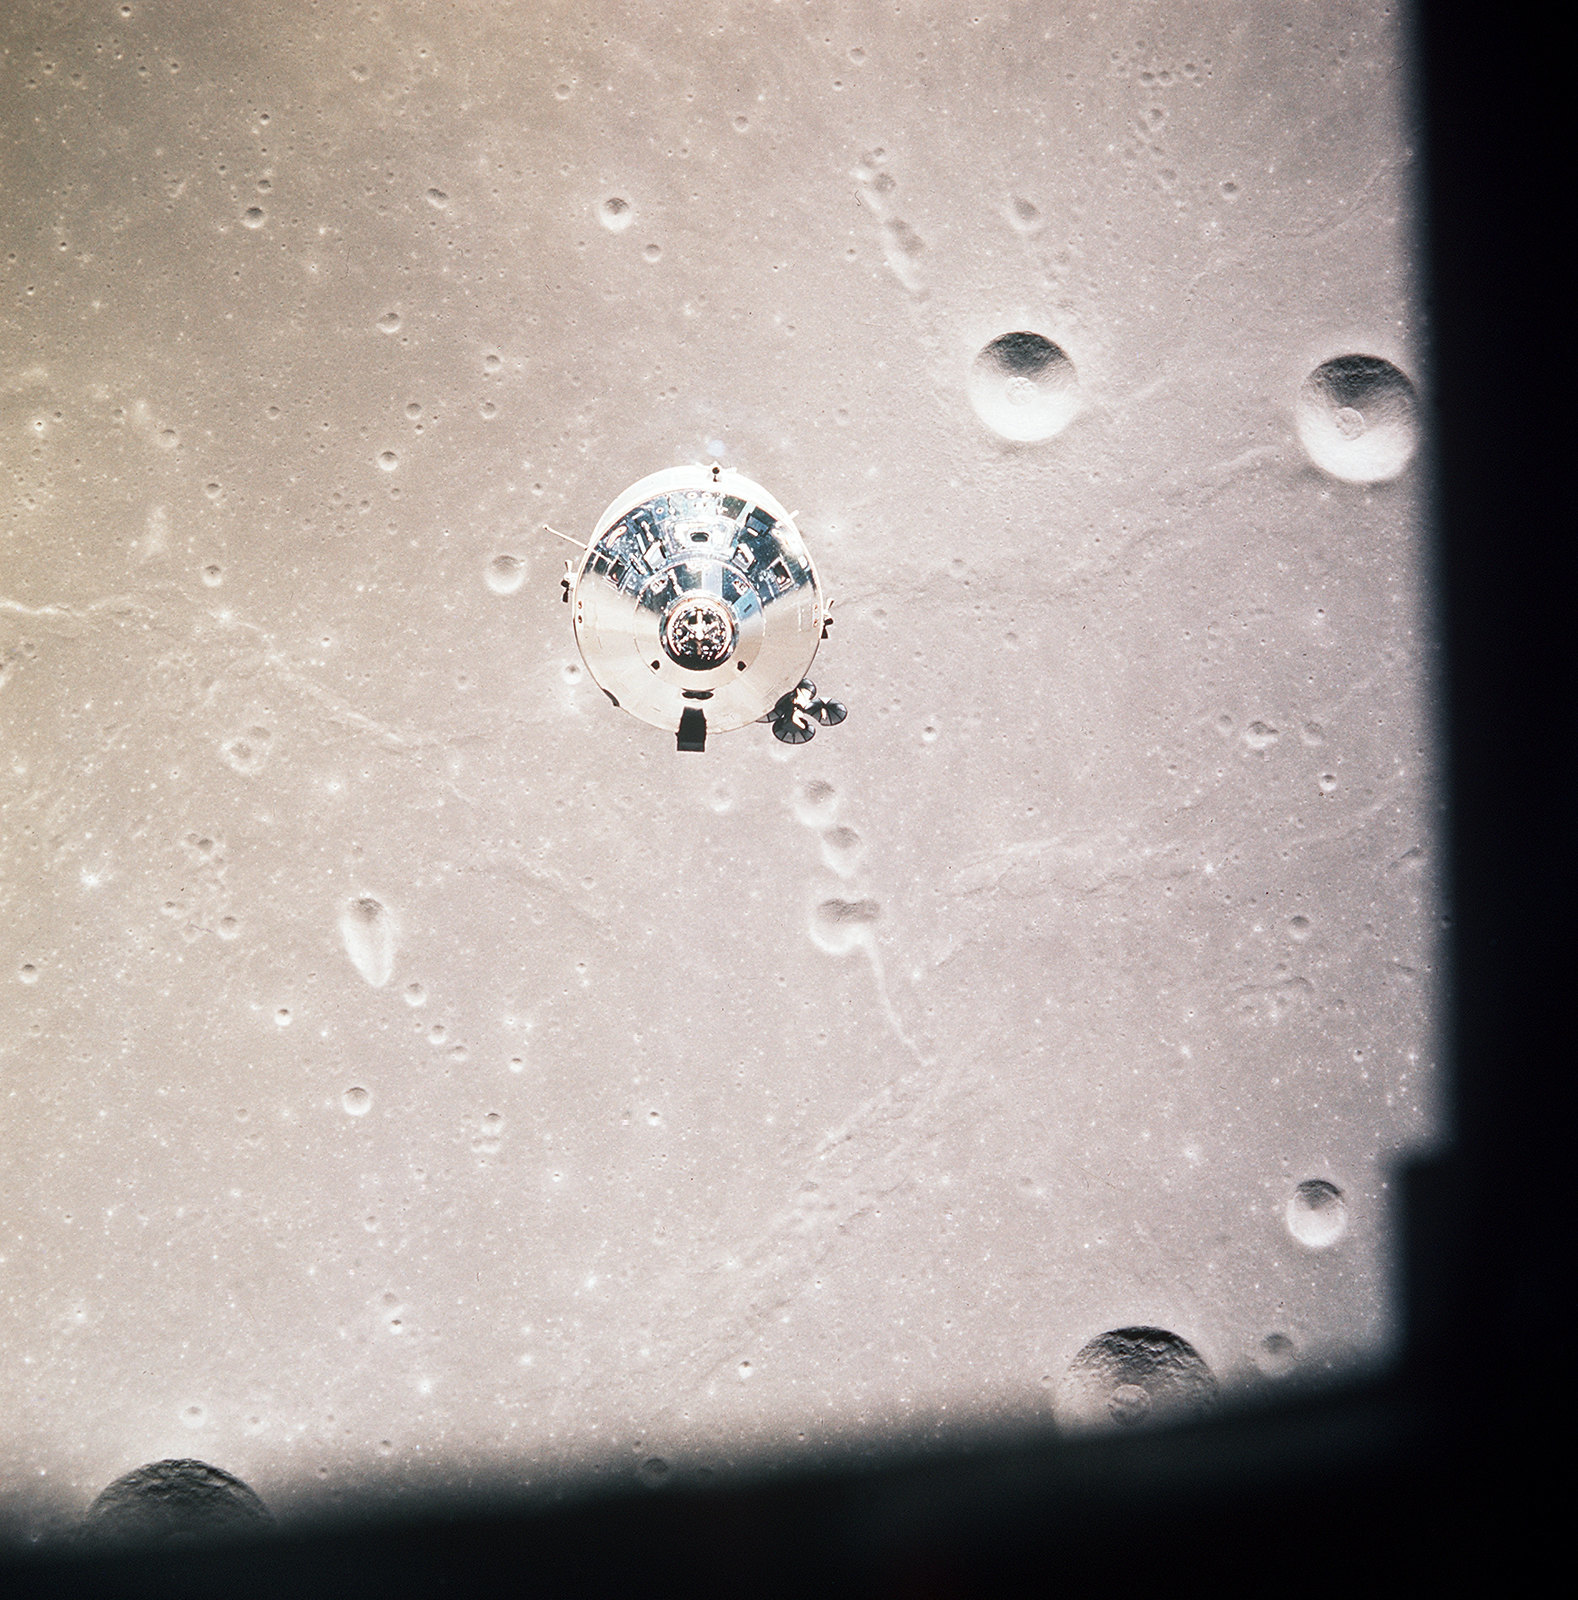 Apollo 11, module de commande et service (CSM) photo vue du module lunaire (LM) en orbite lunaire durant mission atterrissage lunaire, Lune © NASA - as11-37-5445 - 20 Juillet 1969